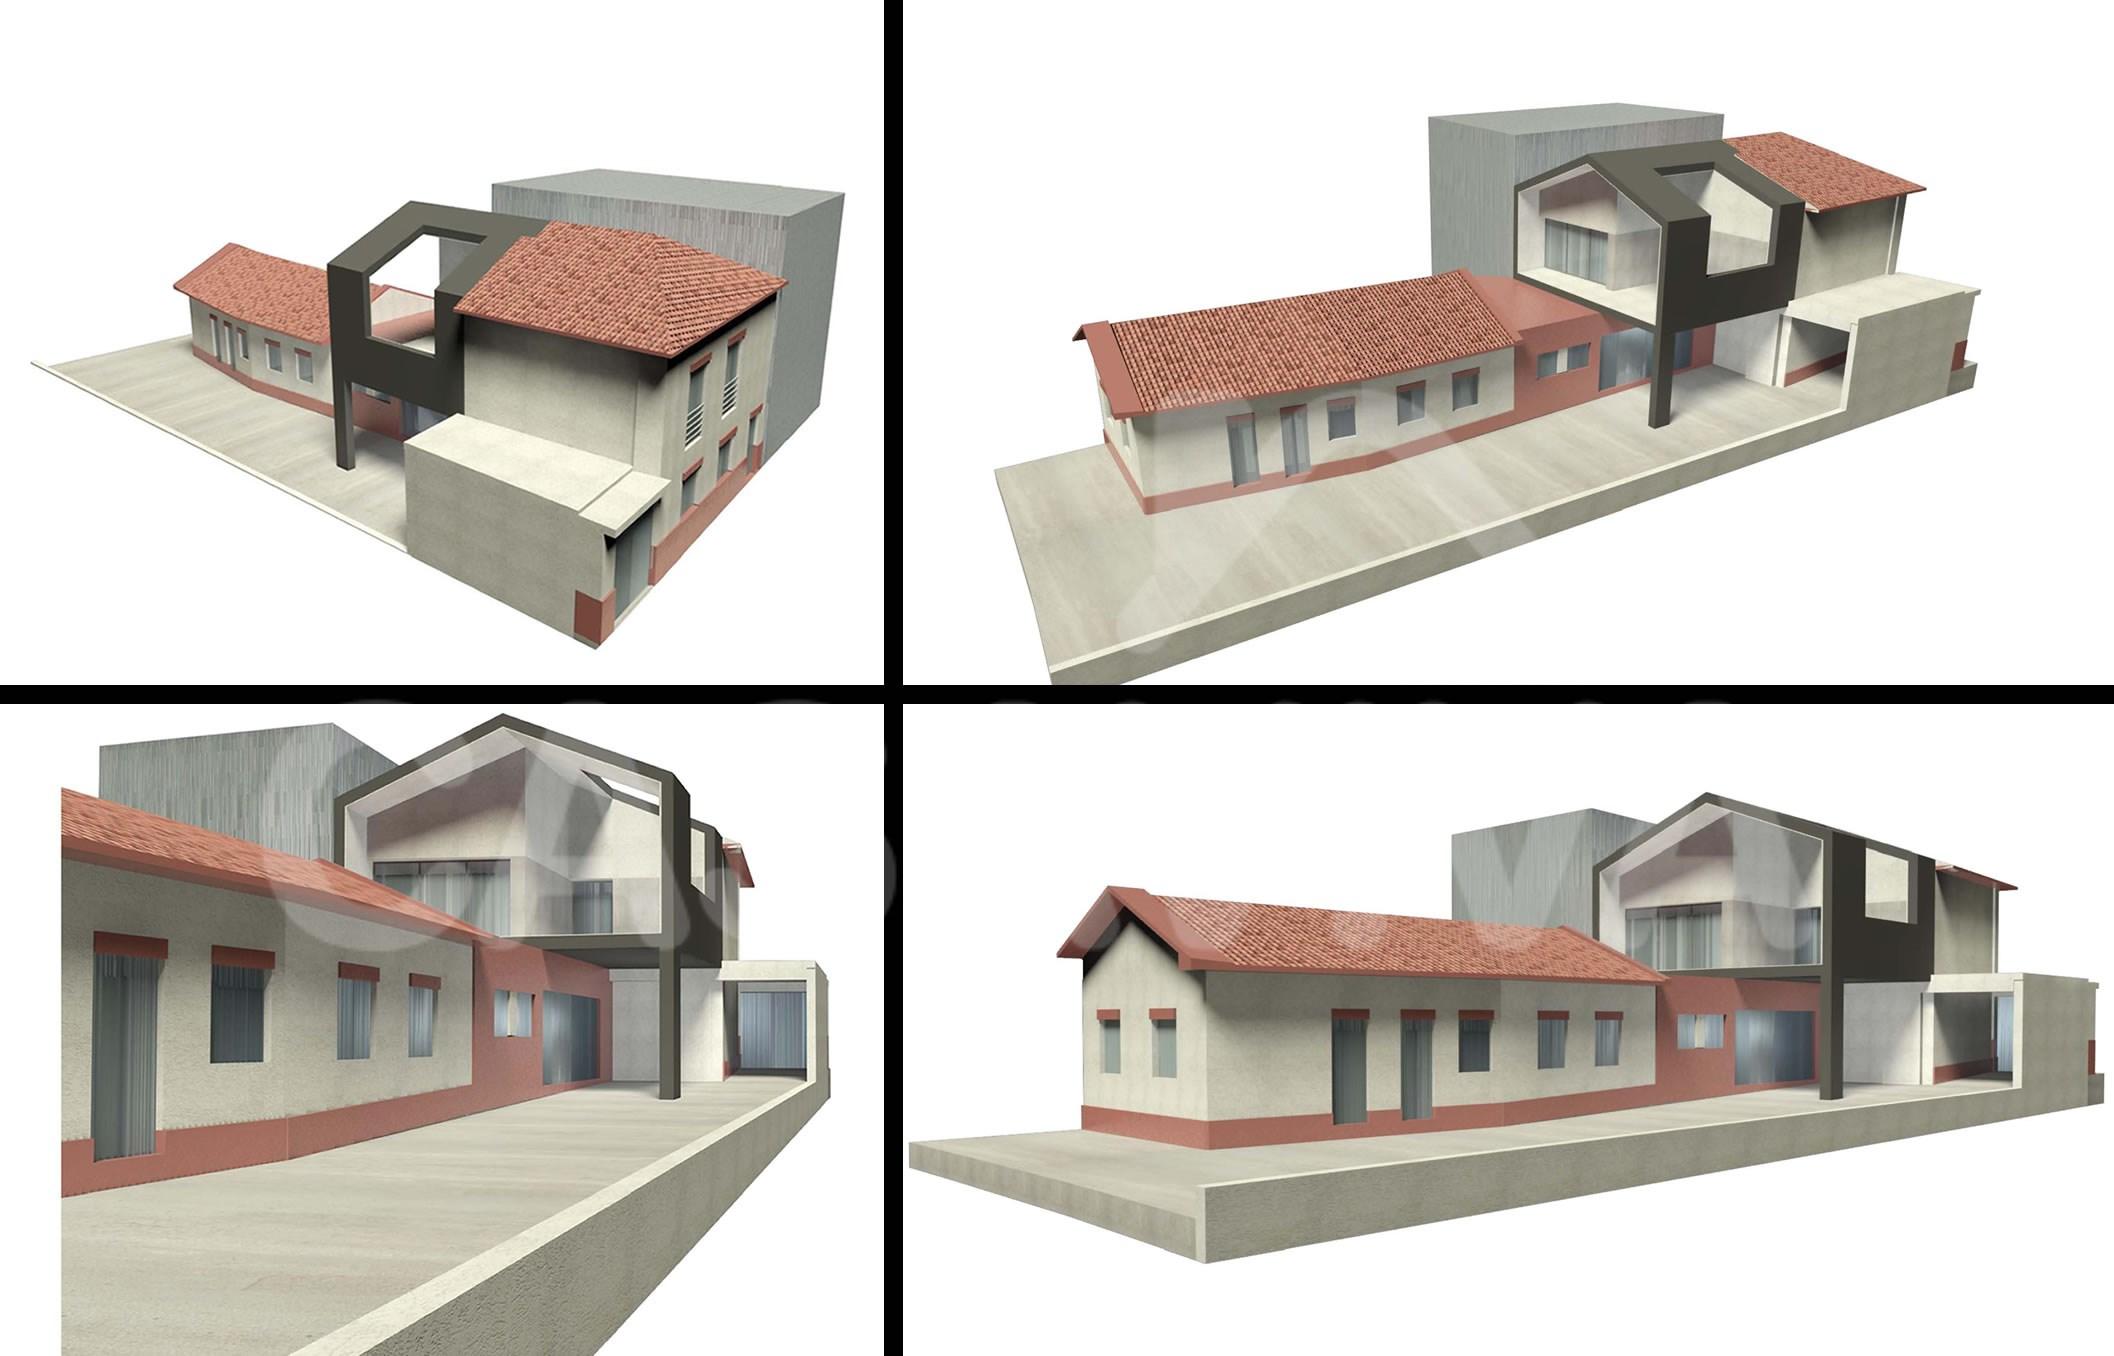 Diferentes vistas 3D da proposta de ampliao da moradia.